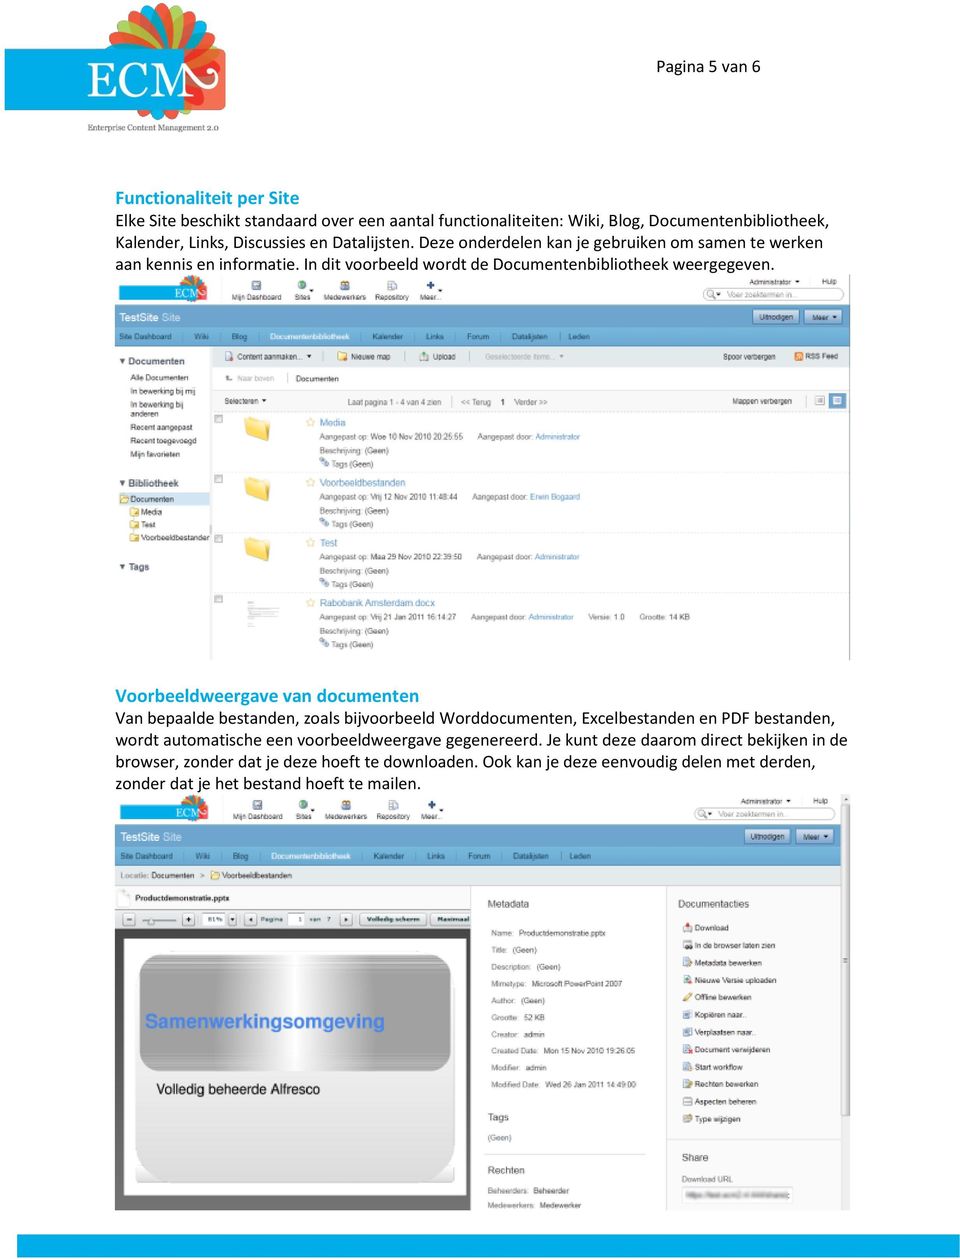 Voorbeeldweergave van documenten Van bepaalde bestanden, zoals bijvoorbeeld Worddocumenten, Excelbestanden en PDF bestanden, wordt automatische een voorbeeldweergave